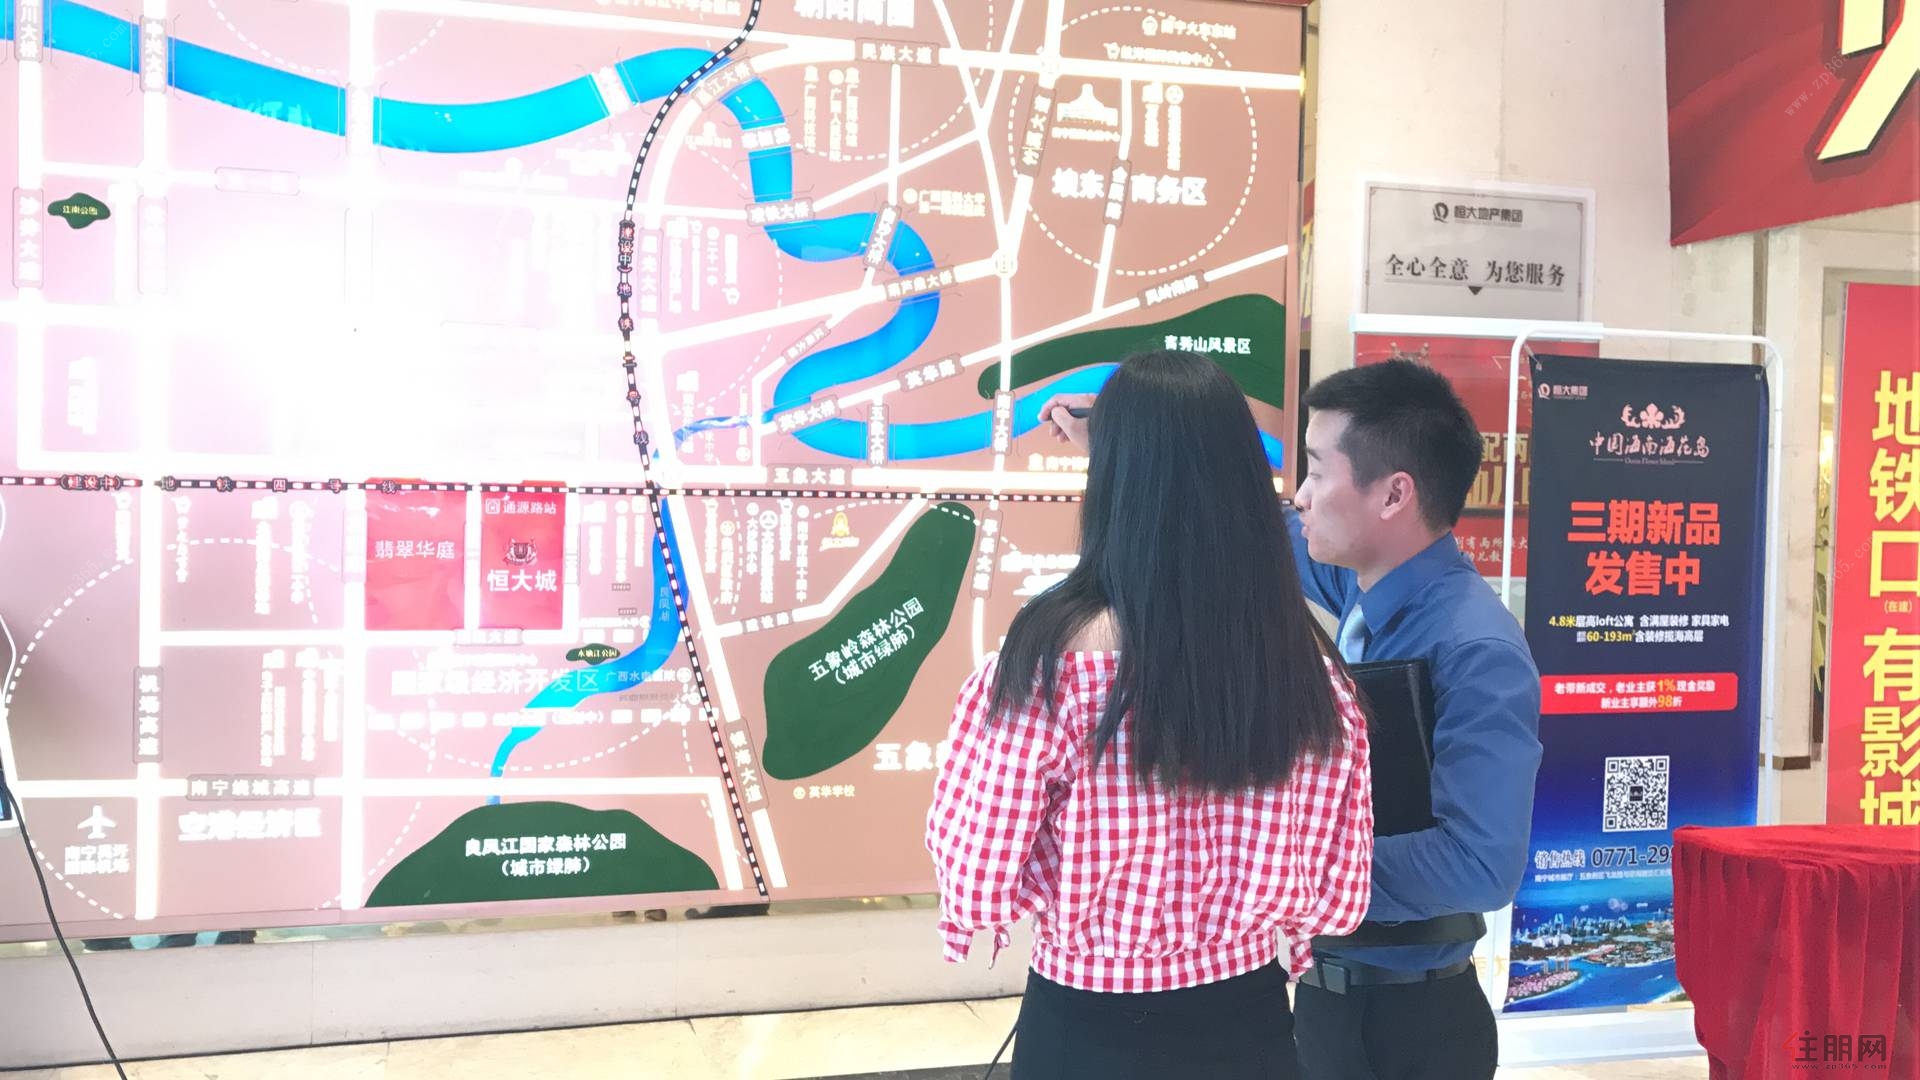 主播正在直播讲解区位图，恒大城毗邻地铁4号线通源站（在建），公交车56、96路途经项目，靠近大沙田客运站、江南客运站等，交通出行便利。